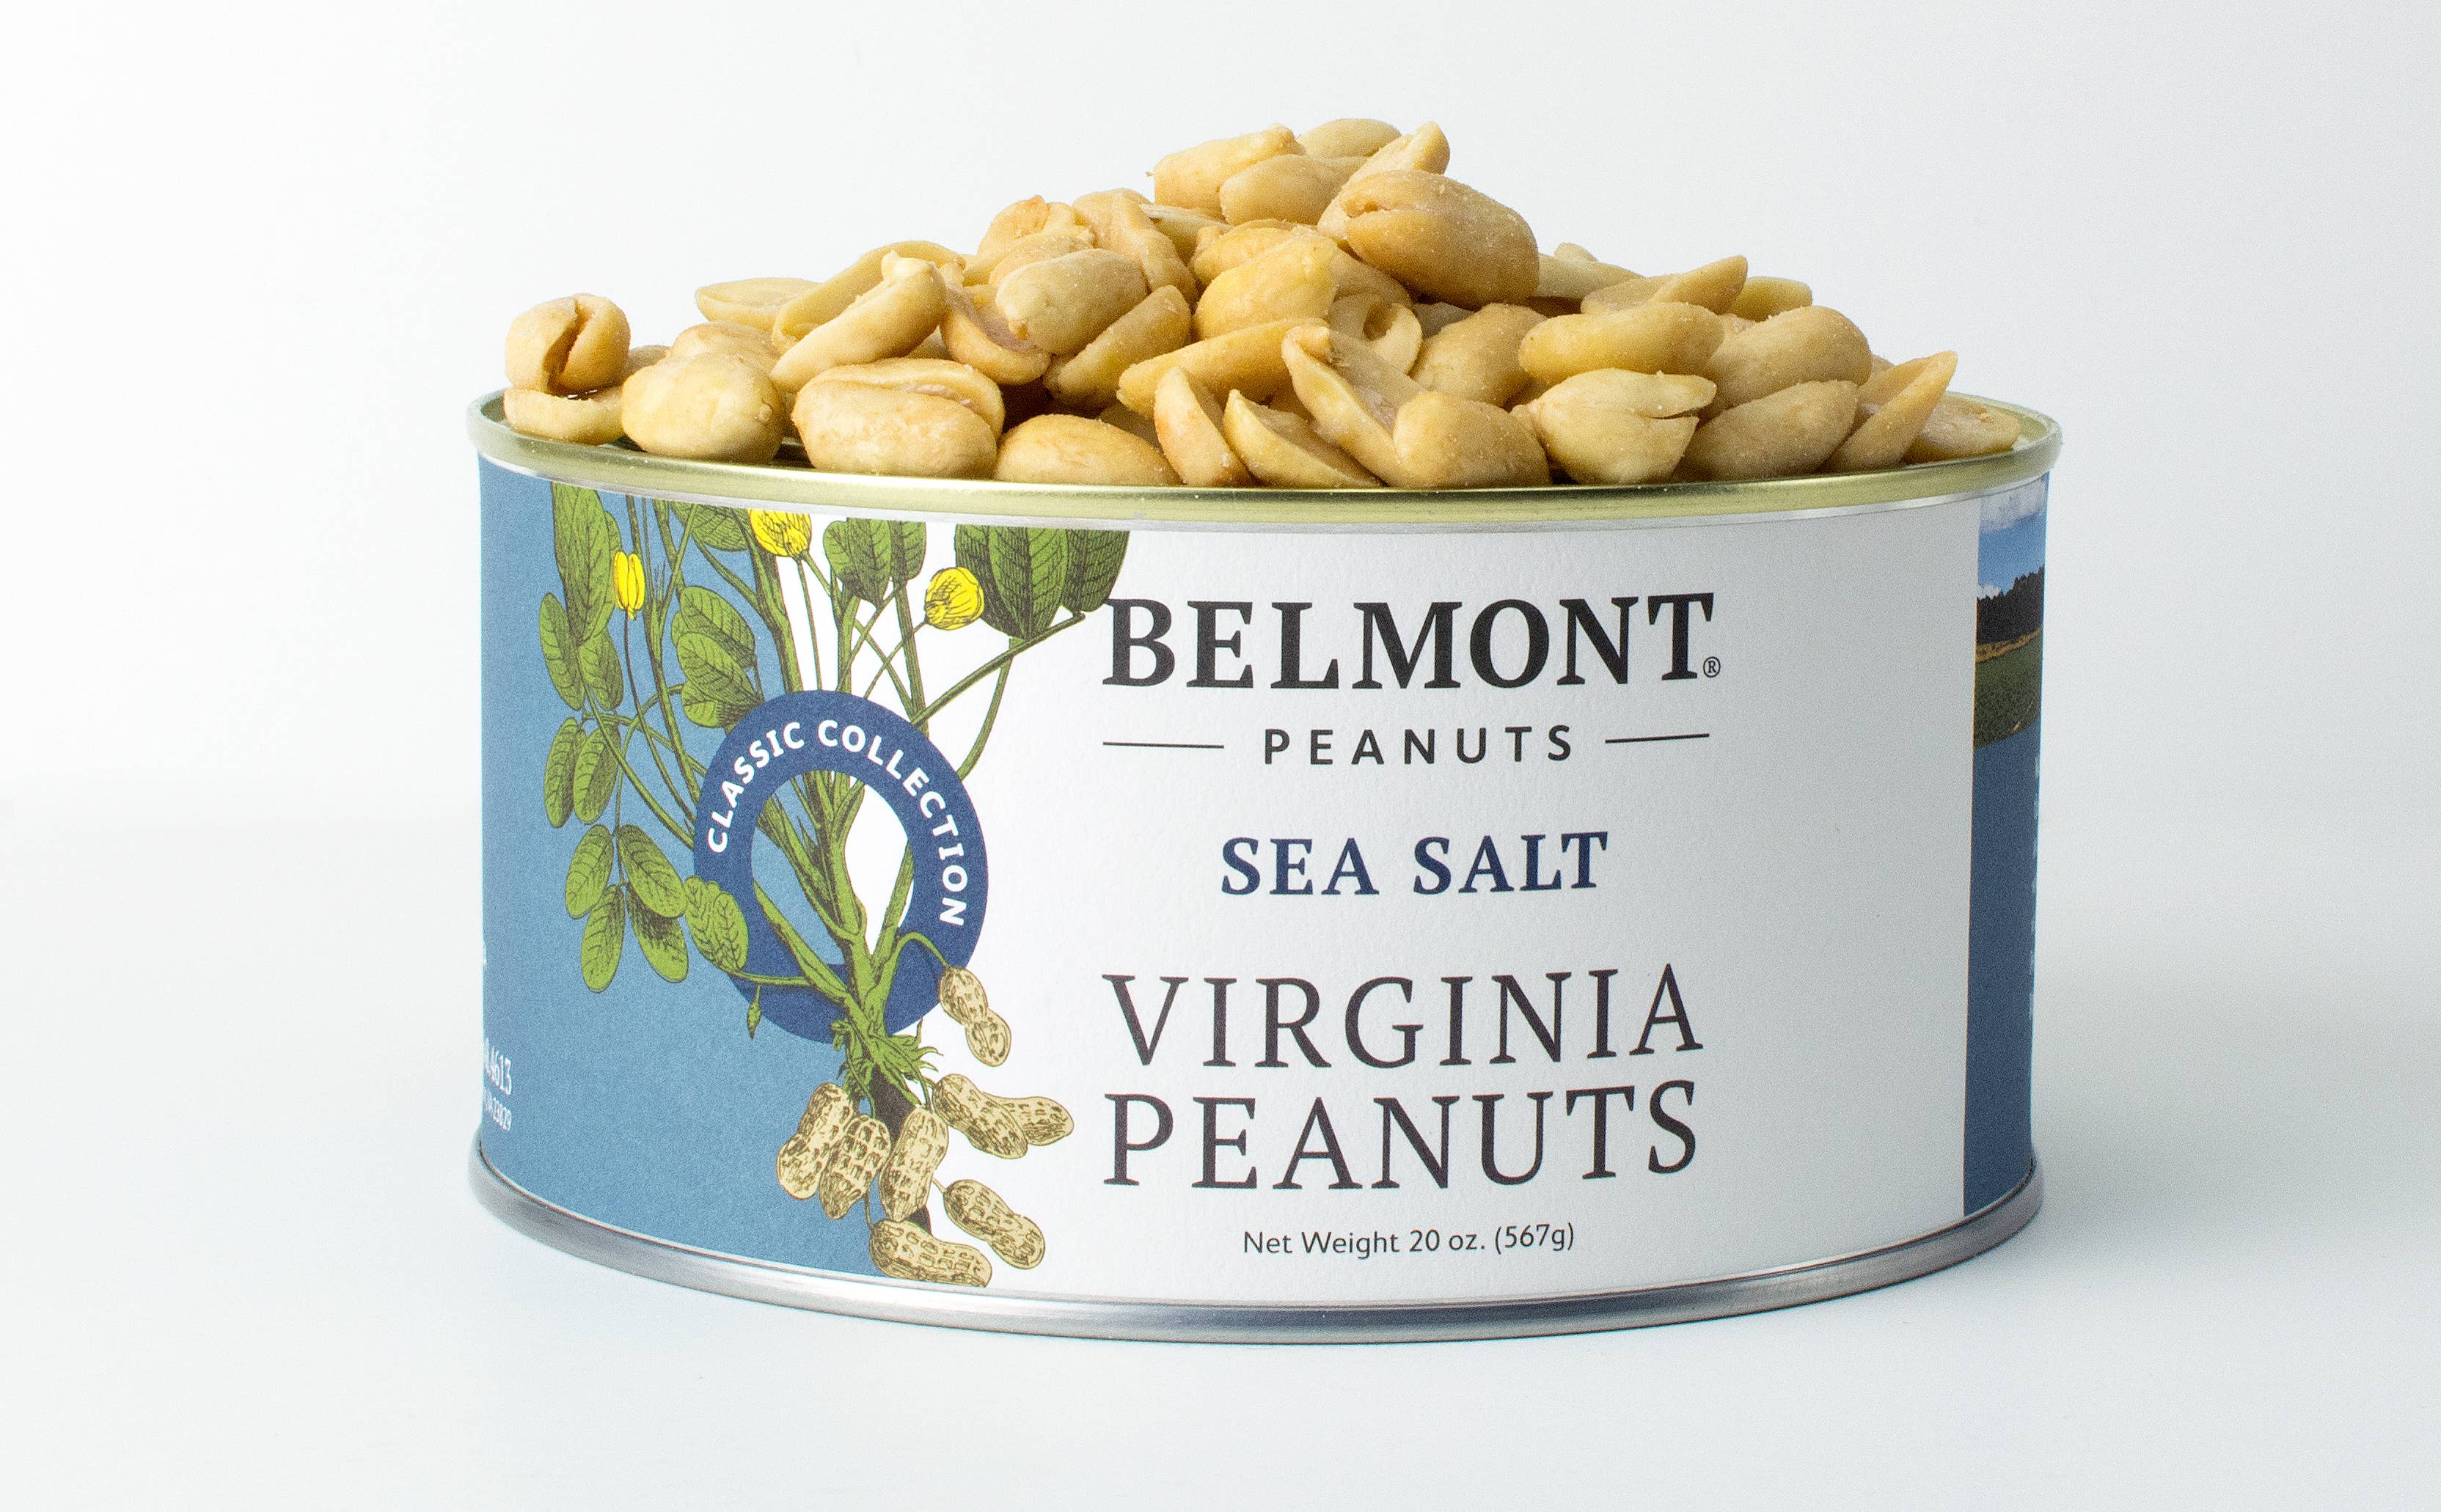 Belmont Peanuts - Sea Salt Virginia Peanuts: 10oz